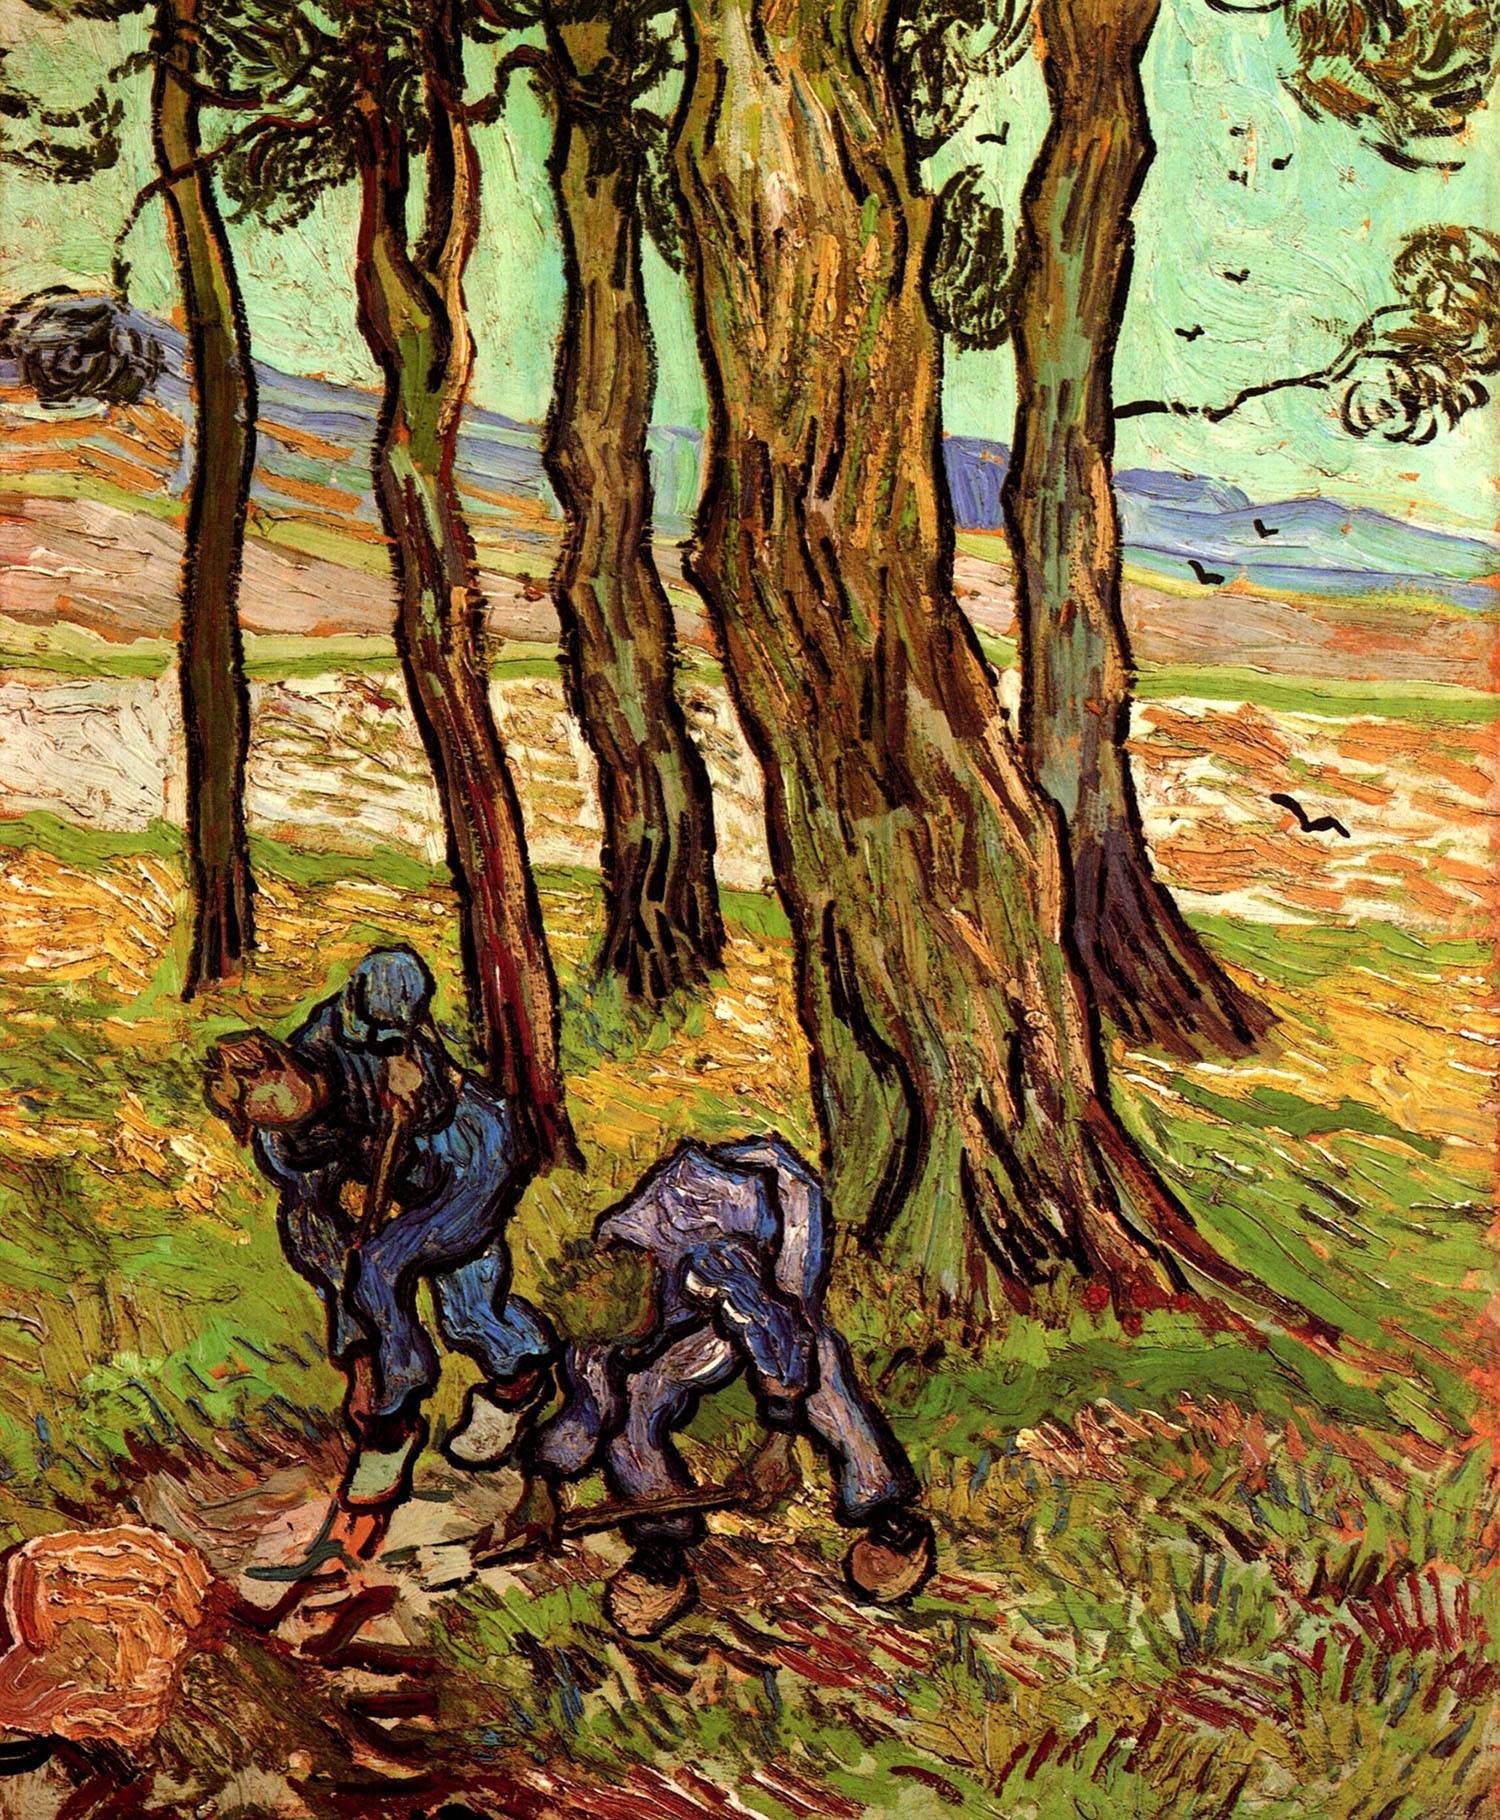 Винсент Ван Гог. "Два копателя среди деревьев". 1889. Институт искусств, Детройт.